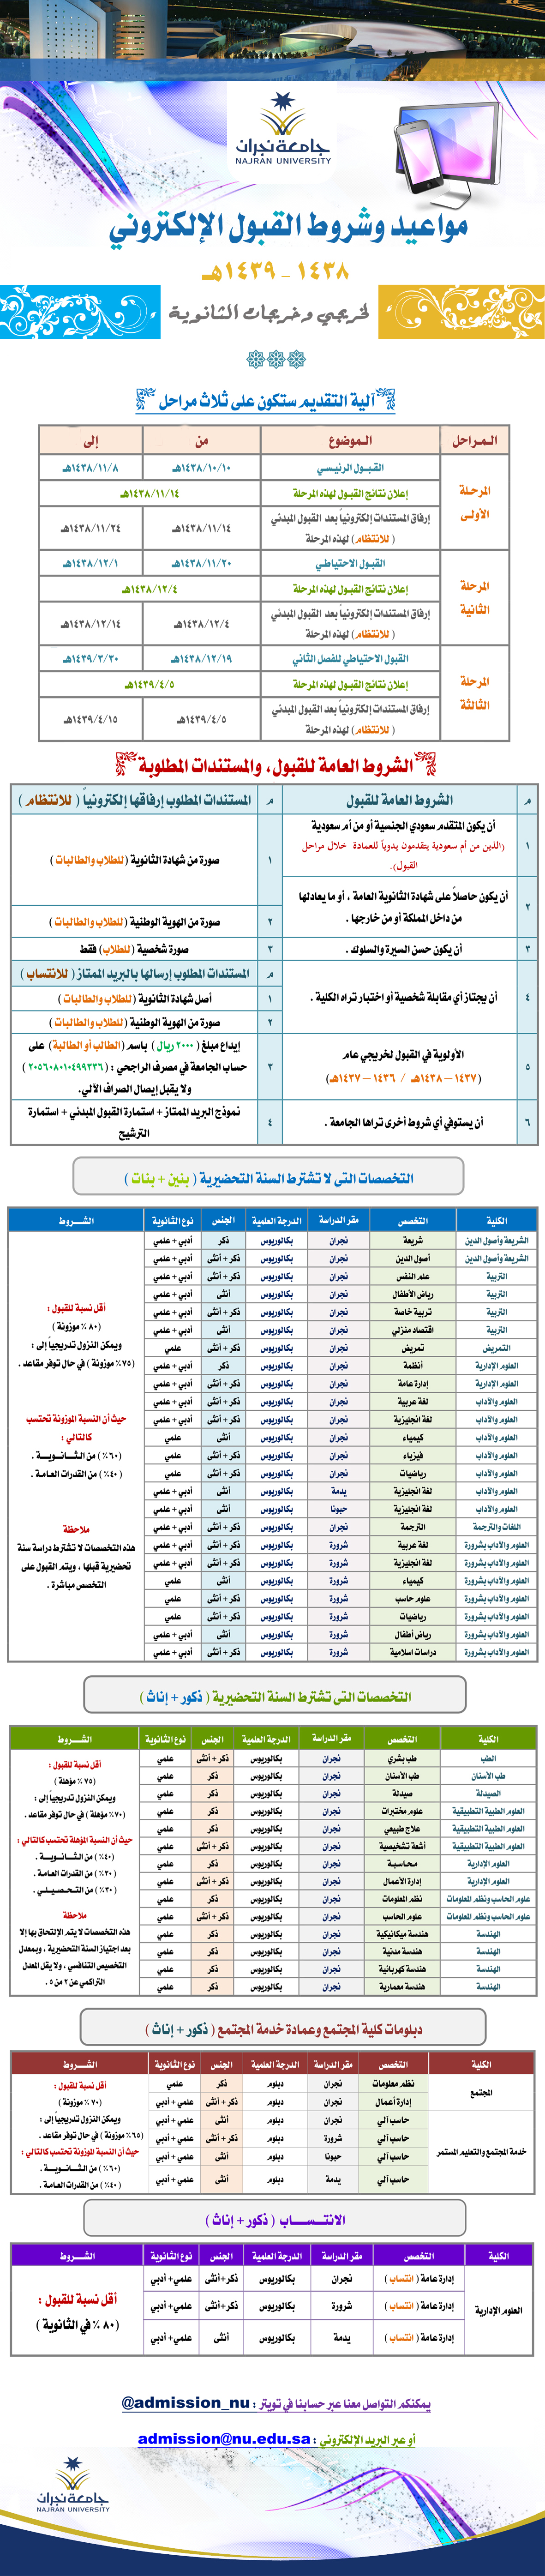 لاعبين النصر الجدد 2014 edition